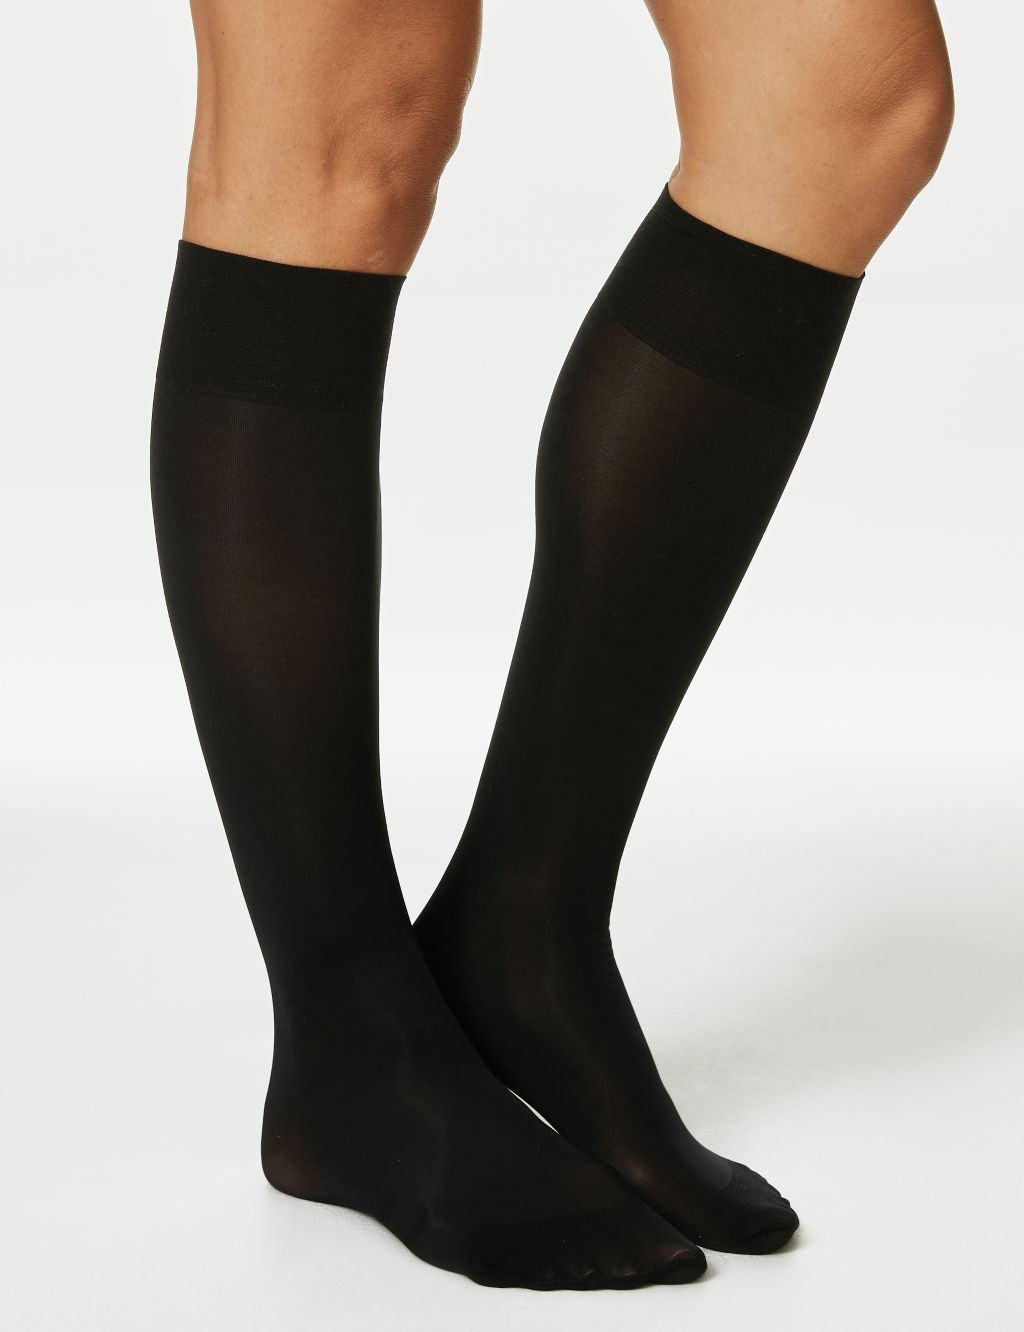 Women’s Ankle-High Socks | M&S